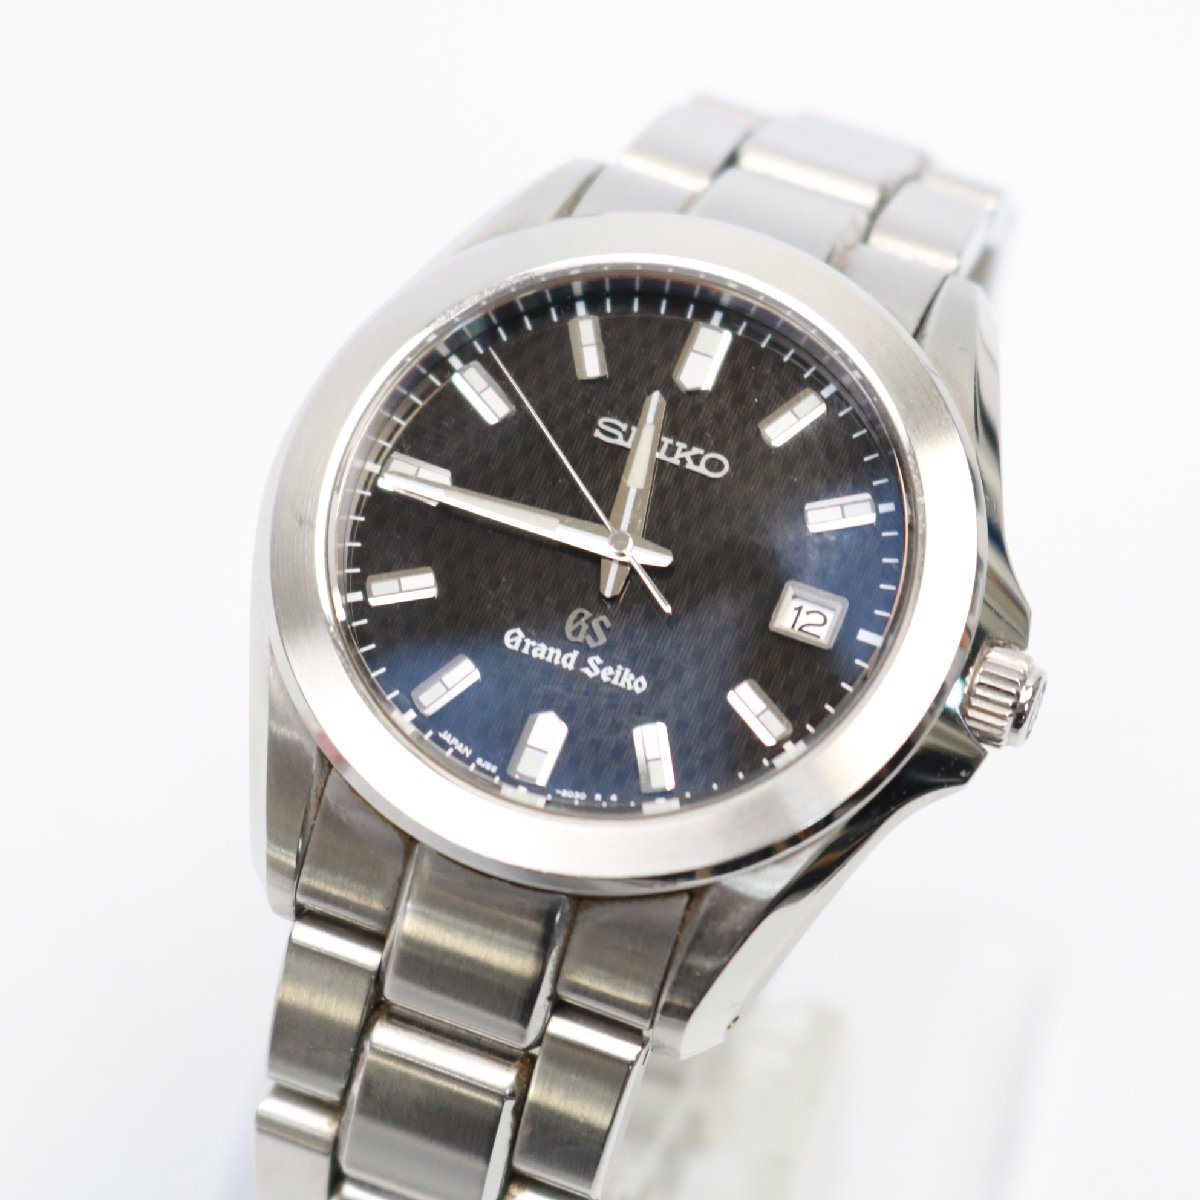 東京都大田区にて セイコー 腕時計 グランドセイコー SBGF021 8J56-8020  を出張買取させて頂きました。